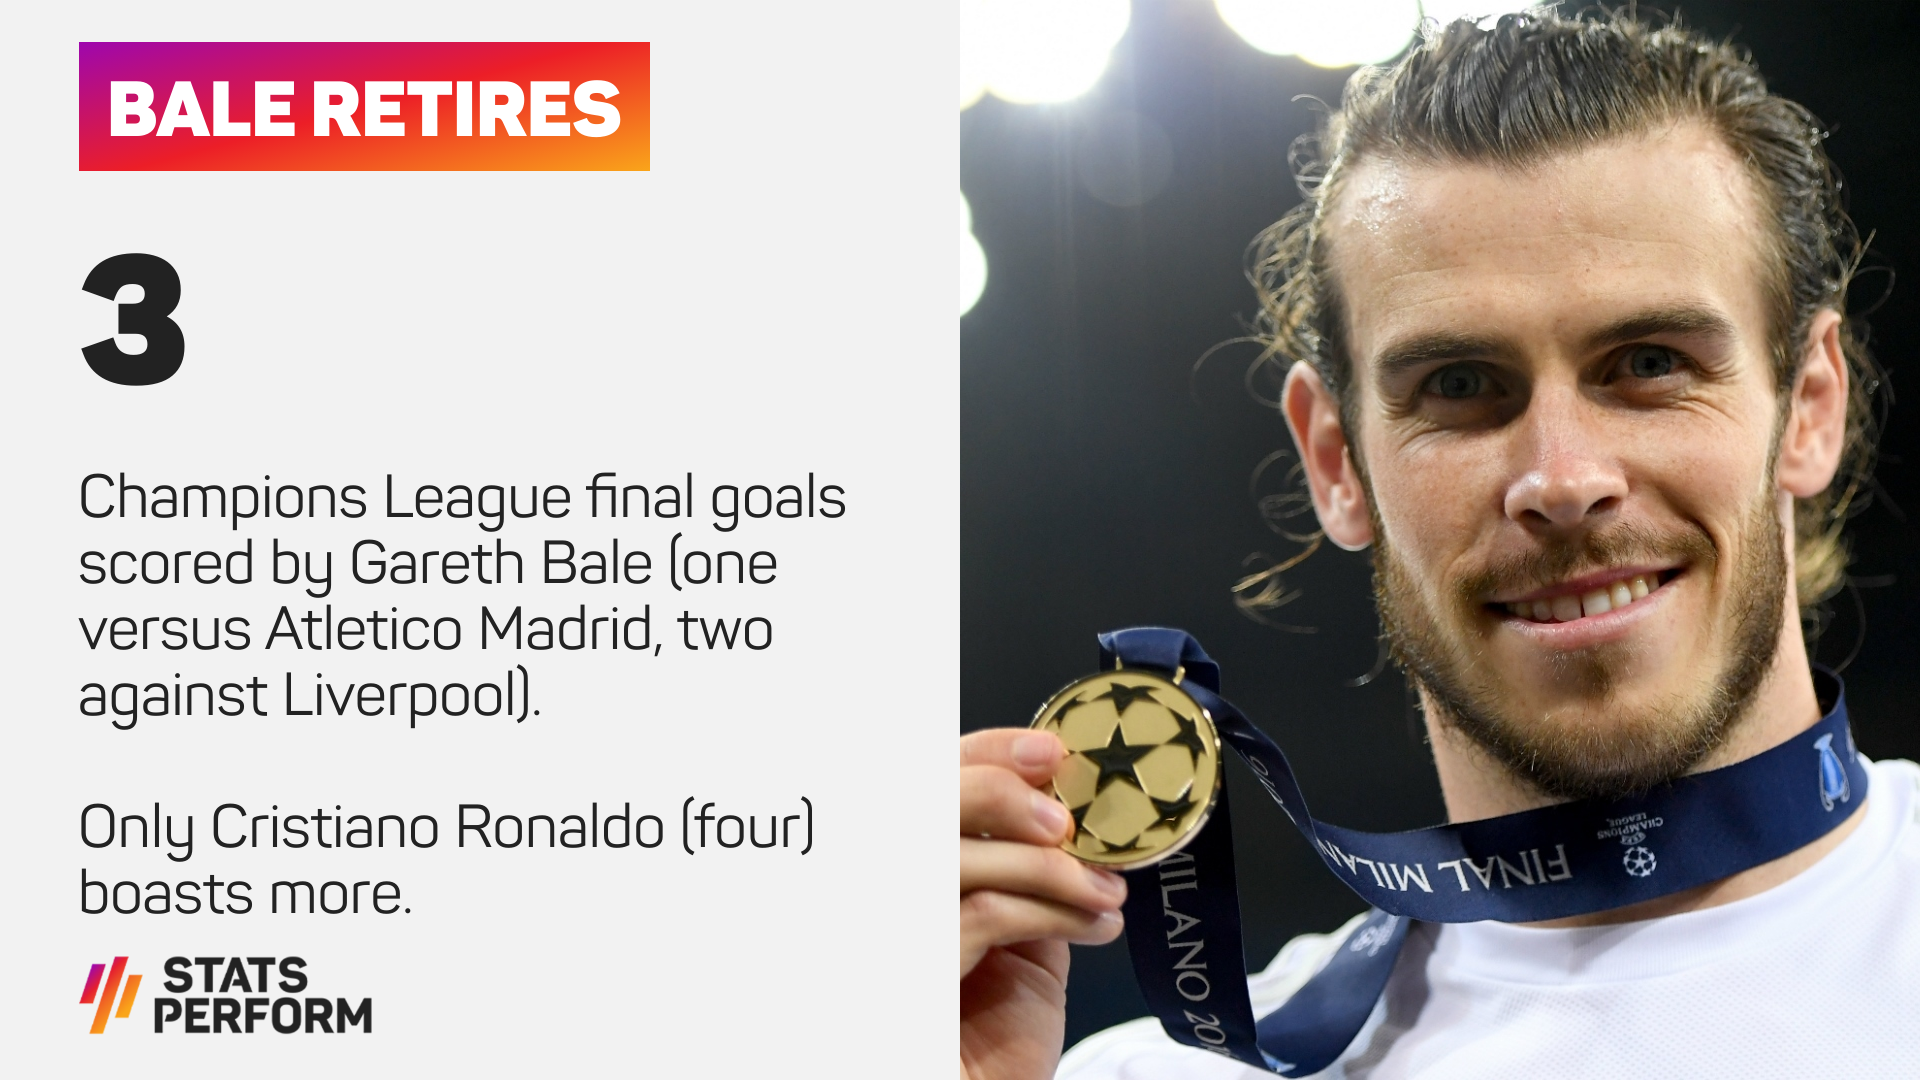 Gareth Bale has three Champions League final goals